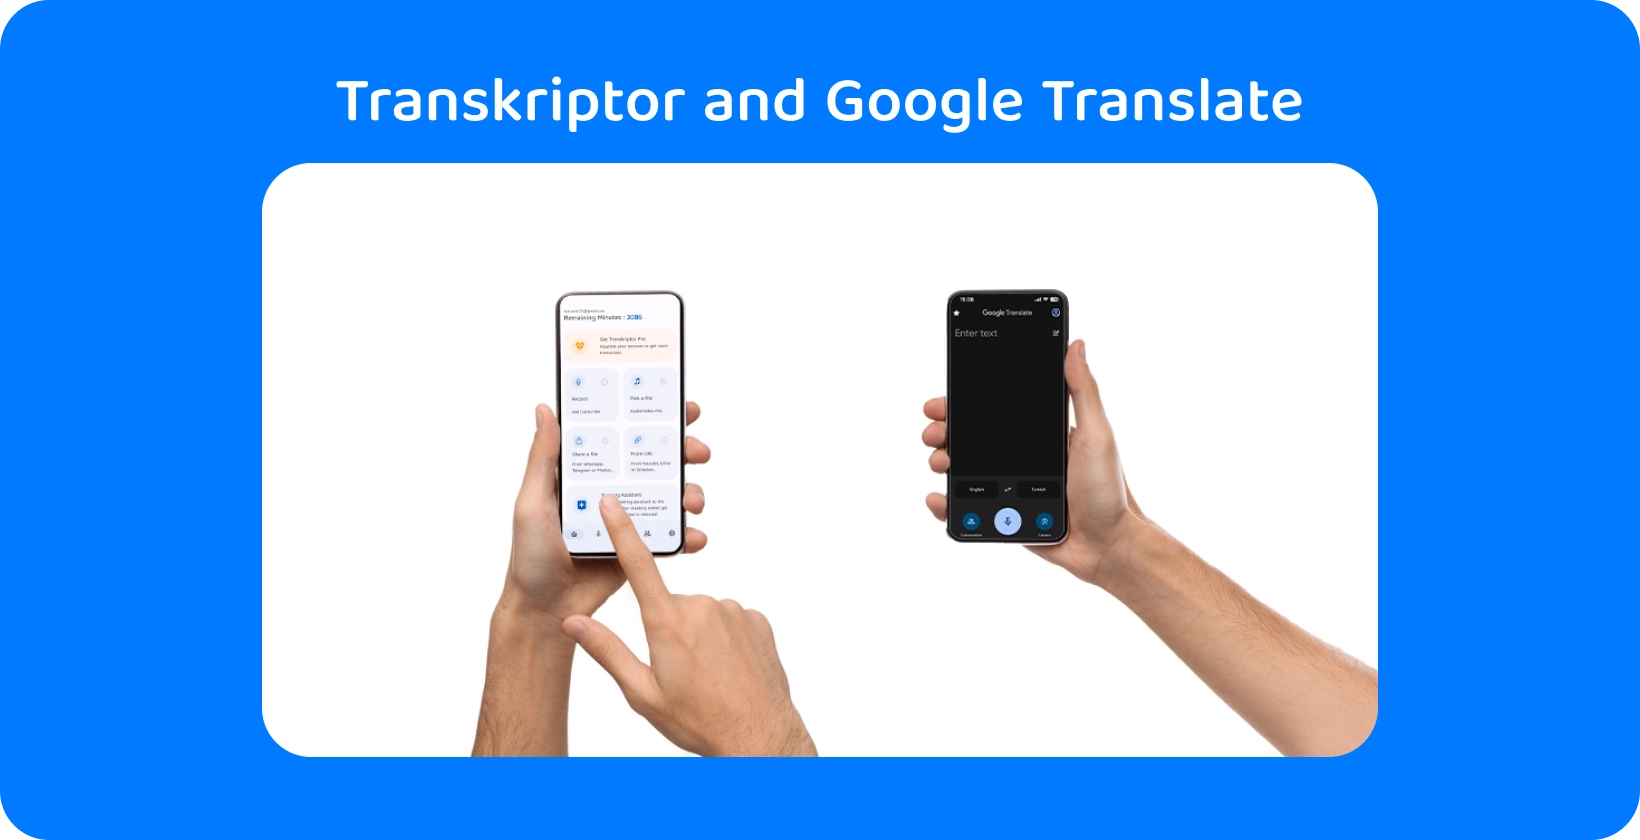 Två händer som håller smartphones med Transkriptor och Google Translate, demonstrerar ljudtranskription och översättning.